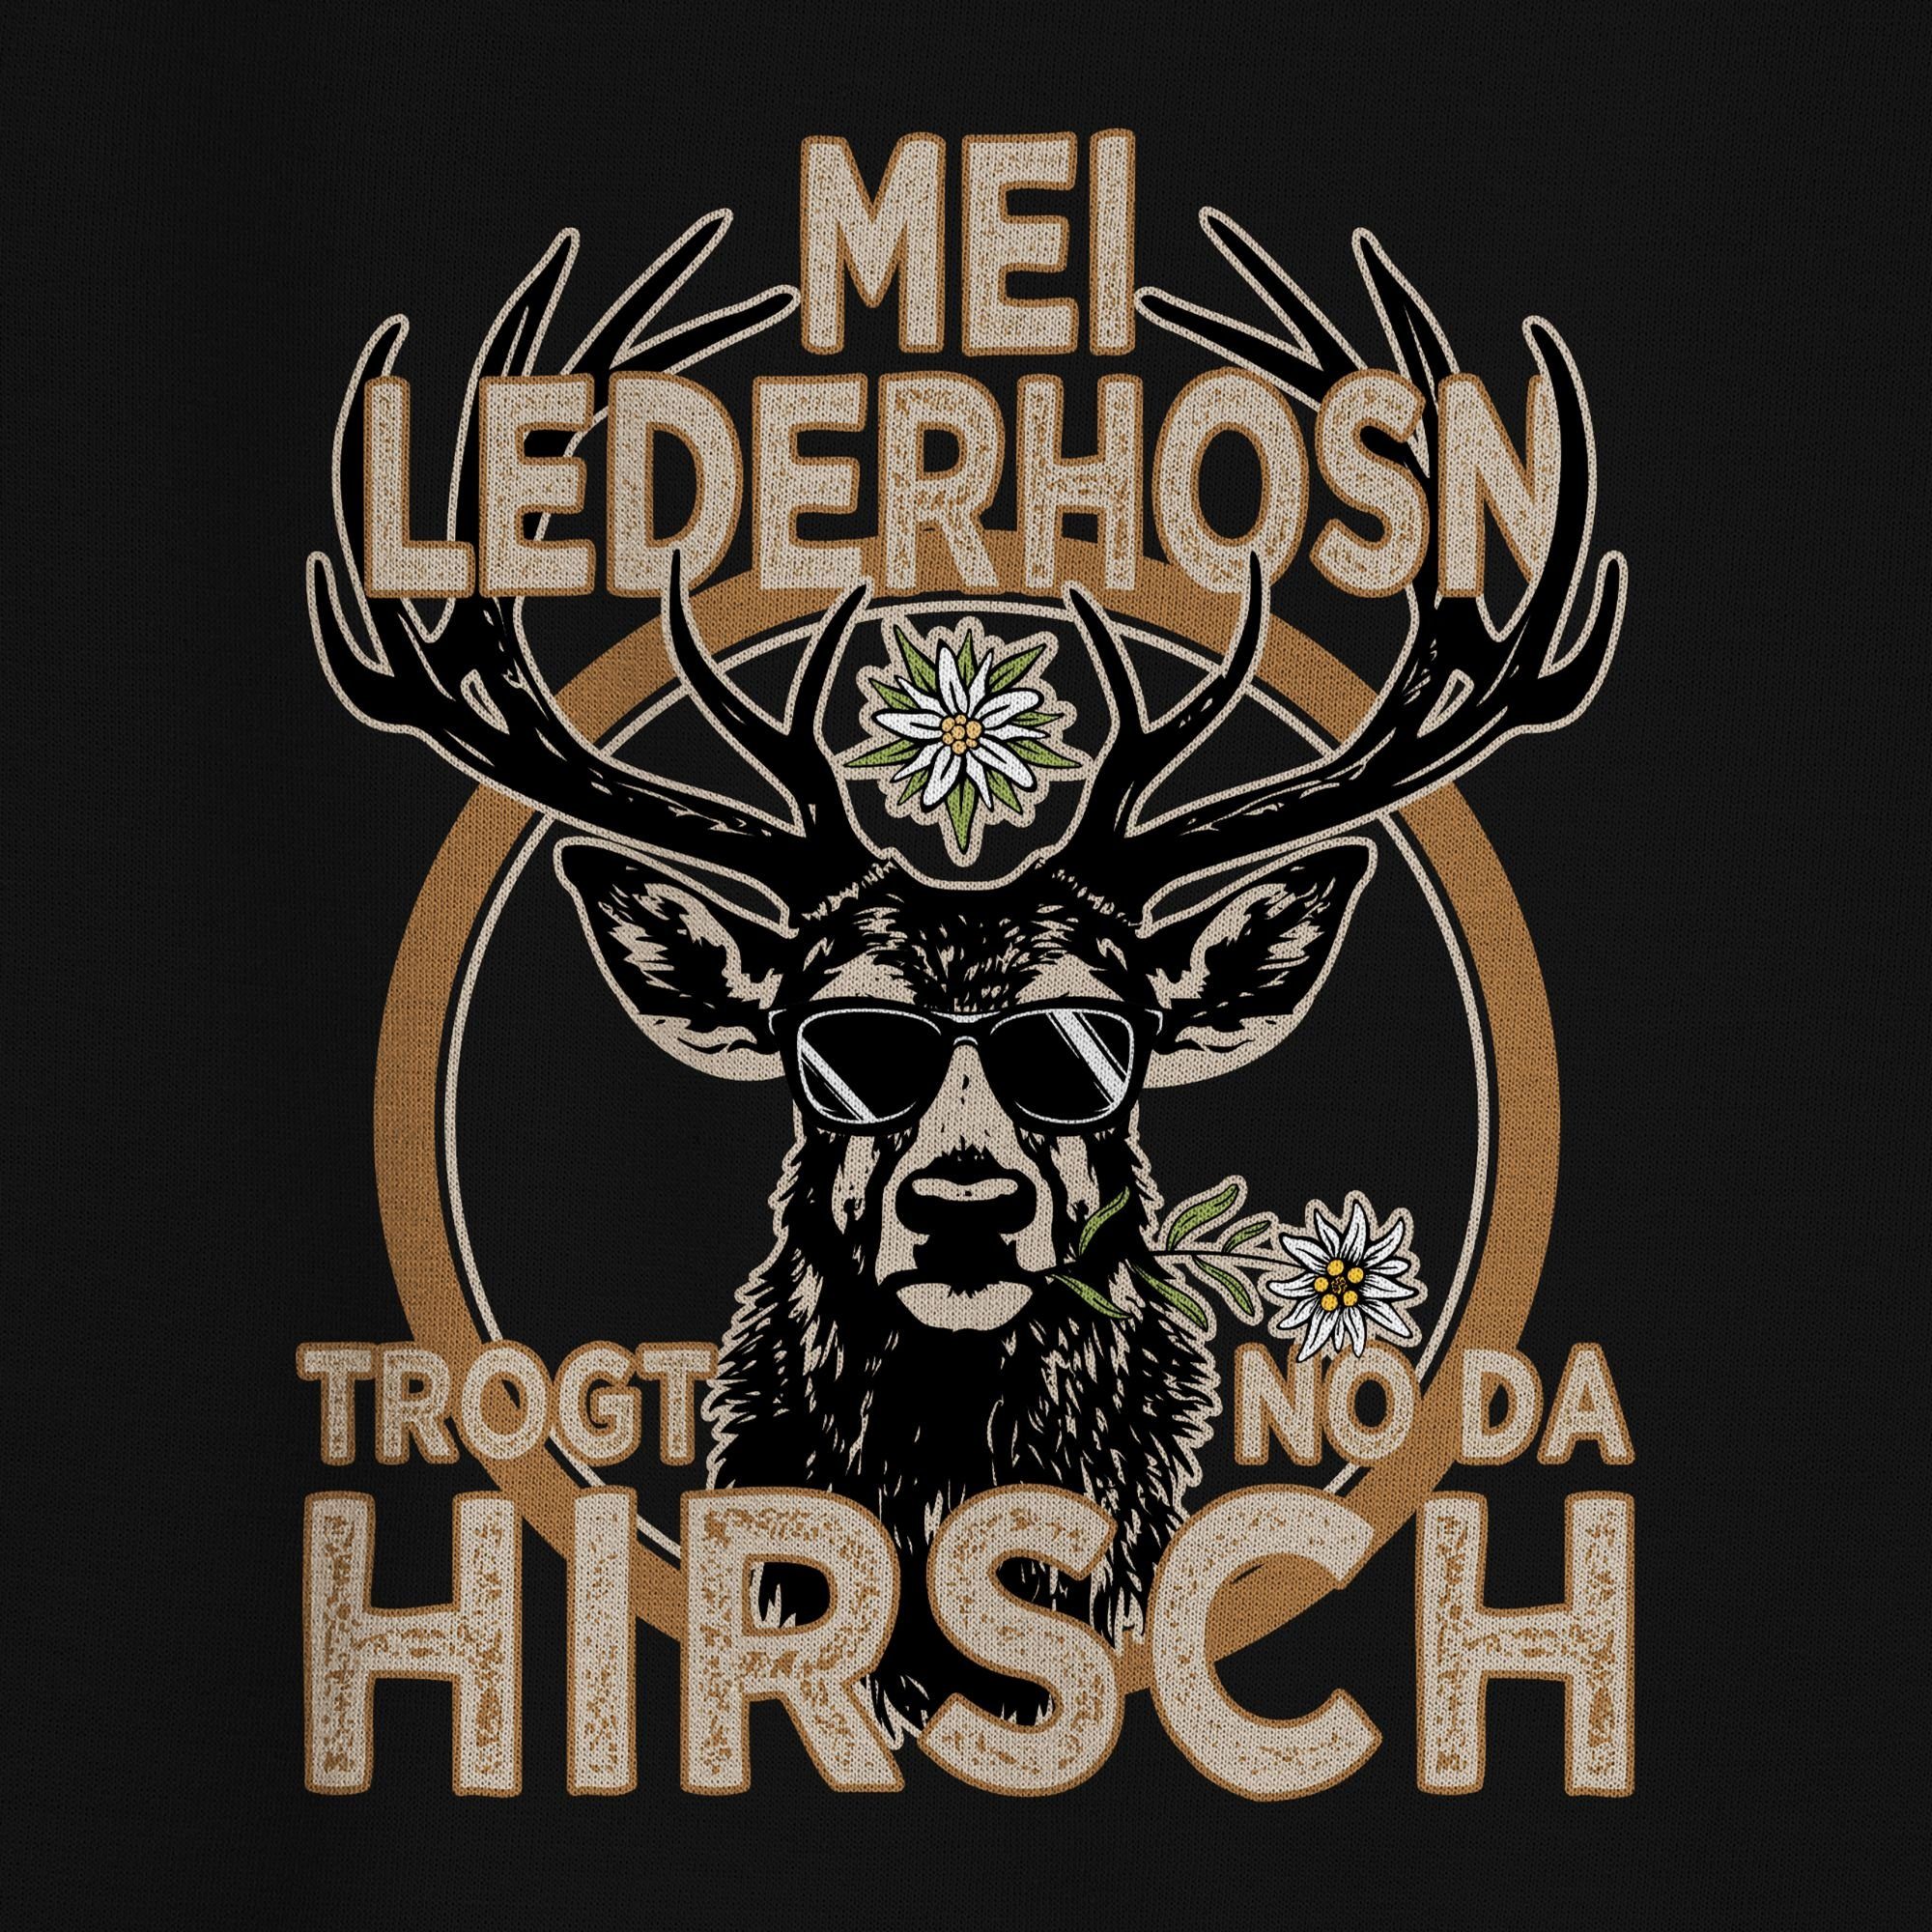 Shirtracer Sweatshirt Trachten Outfit Lederhose Herren 3 für der Oktoberfest (1-tlg) Mode Spruch Trägt Schwarz Hirsch